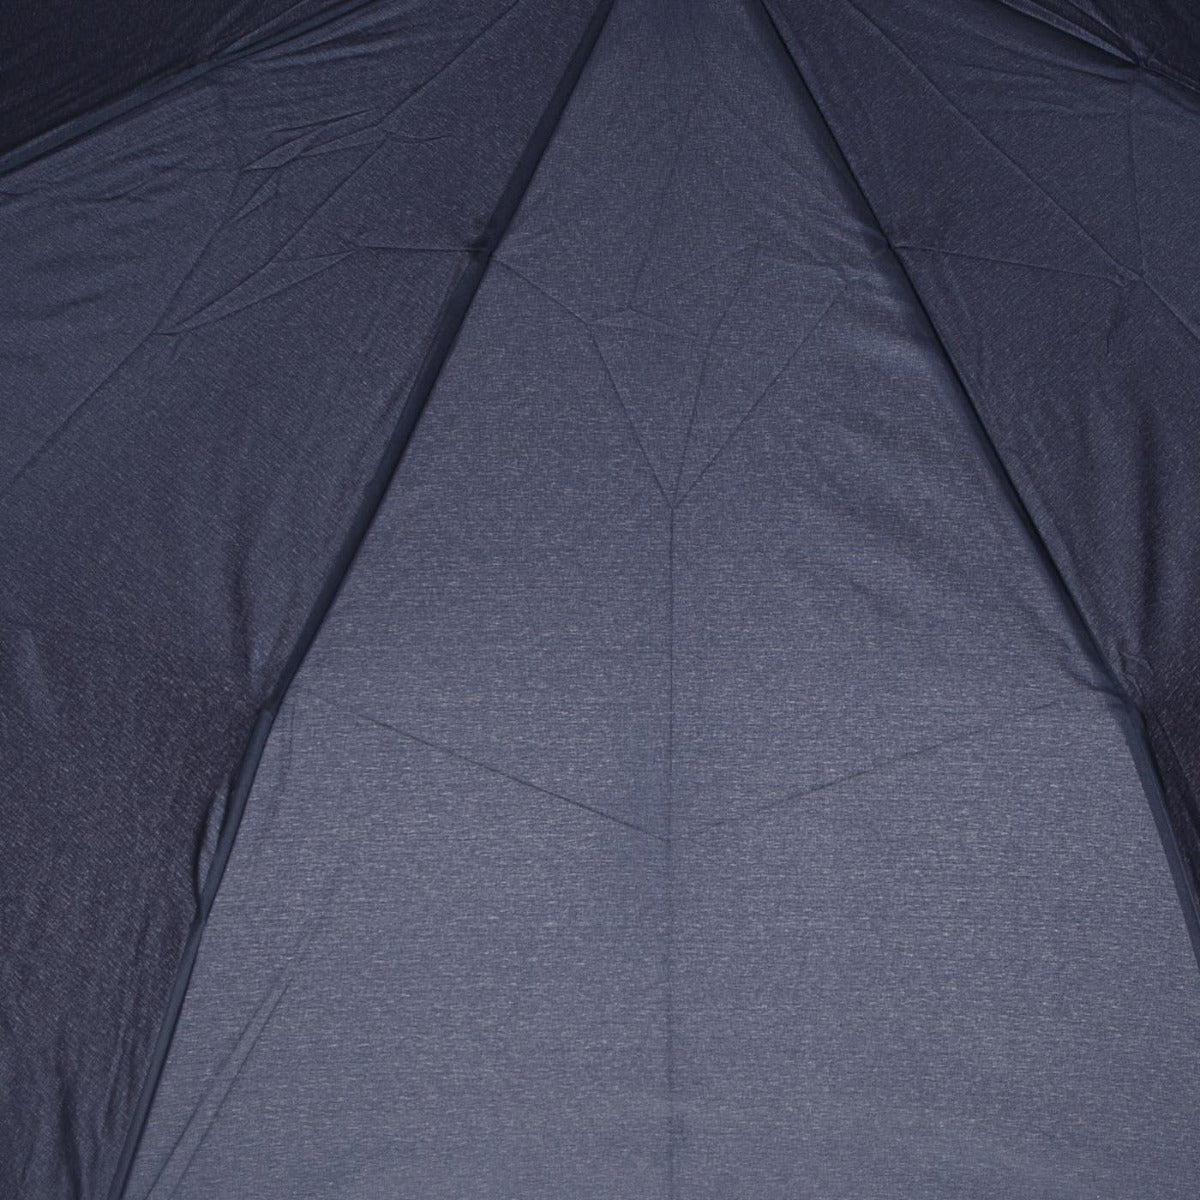 samsonite-ombrello-automatico-apri-chiudi-ck1-203-01-alu-drops-blu